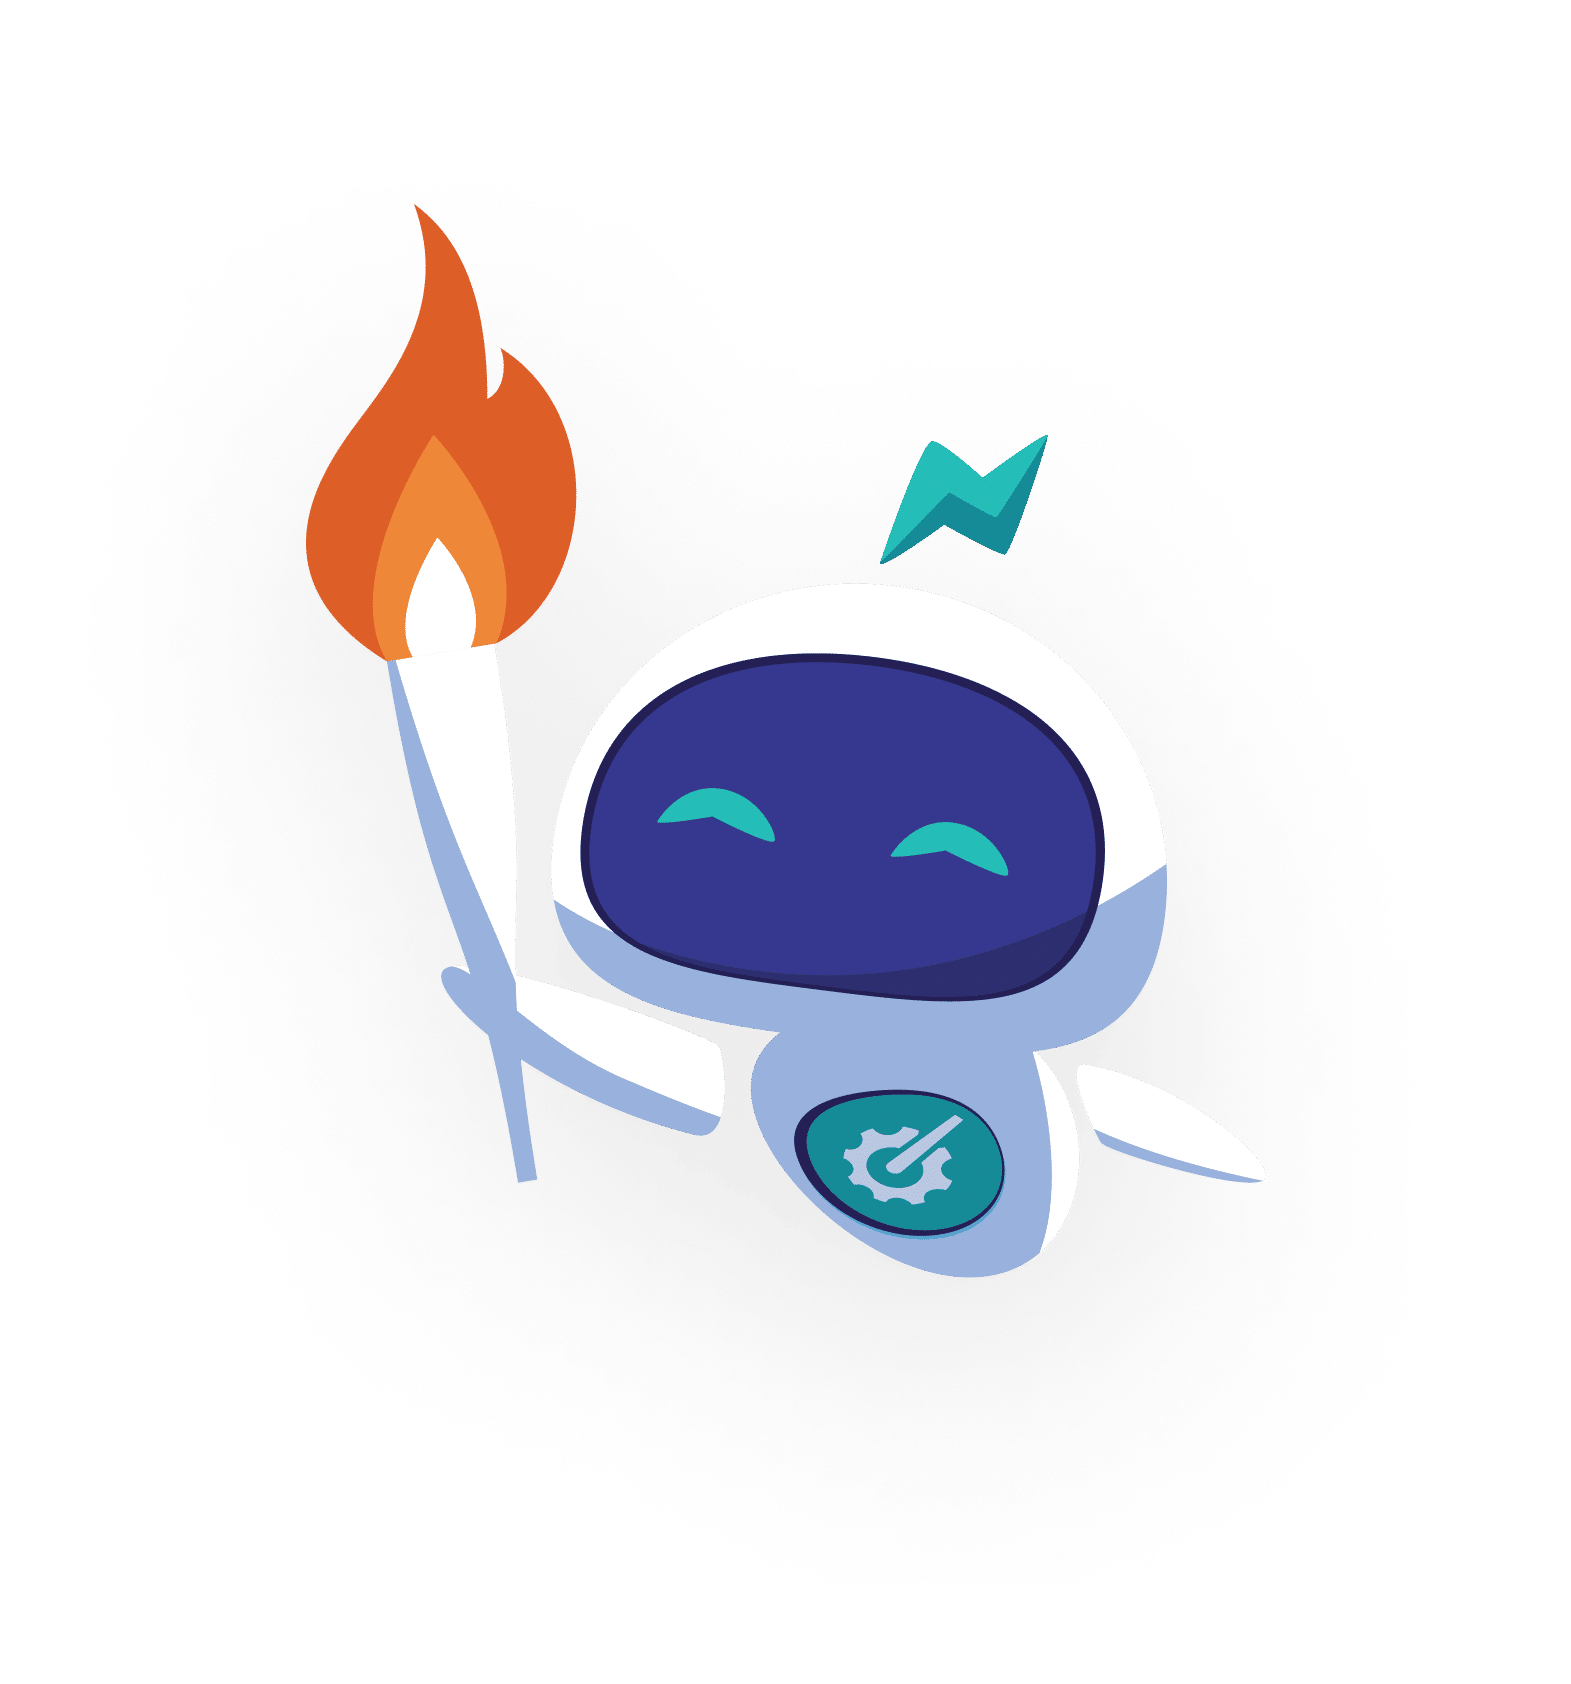 Rudder robot flamme olympique